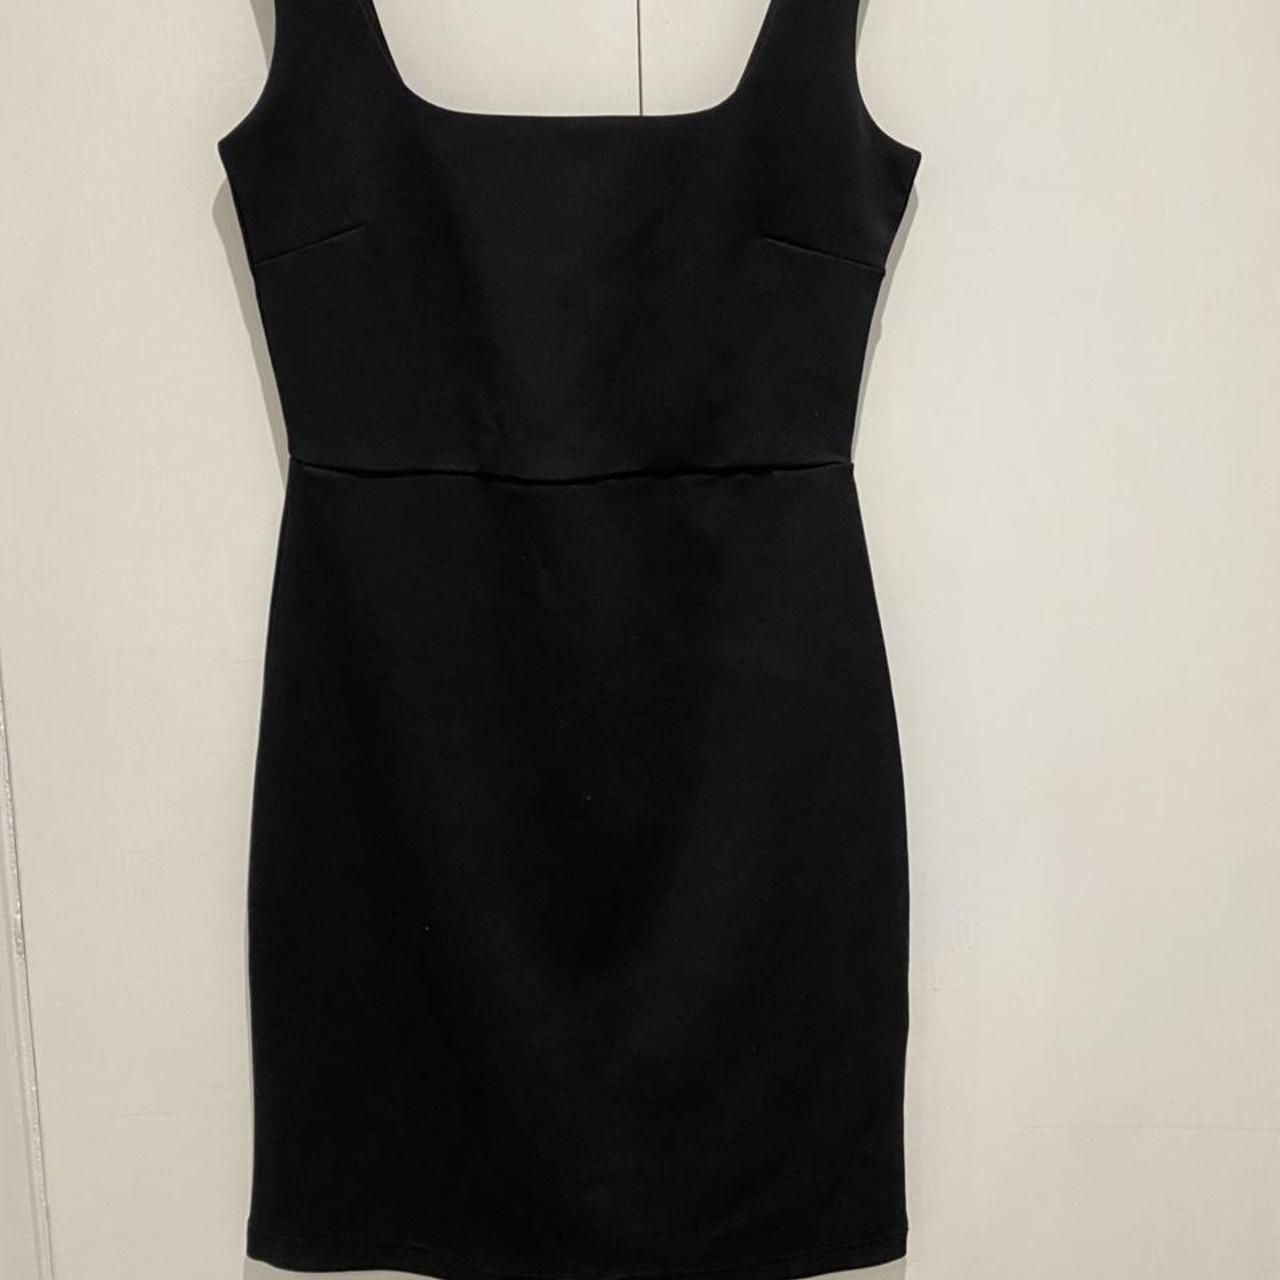 H&M little black dress - jersey material - Depop